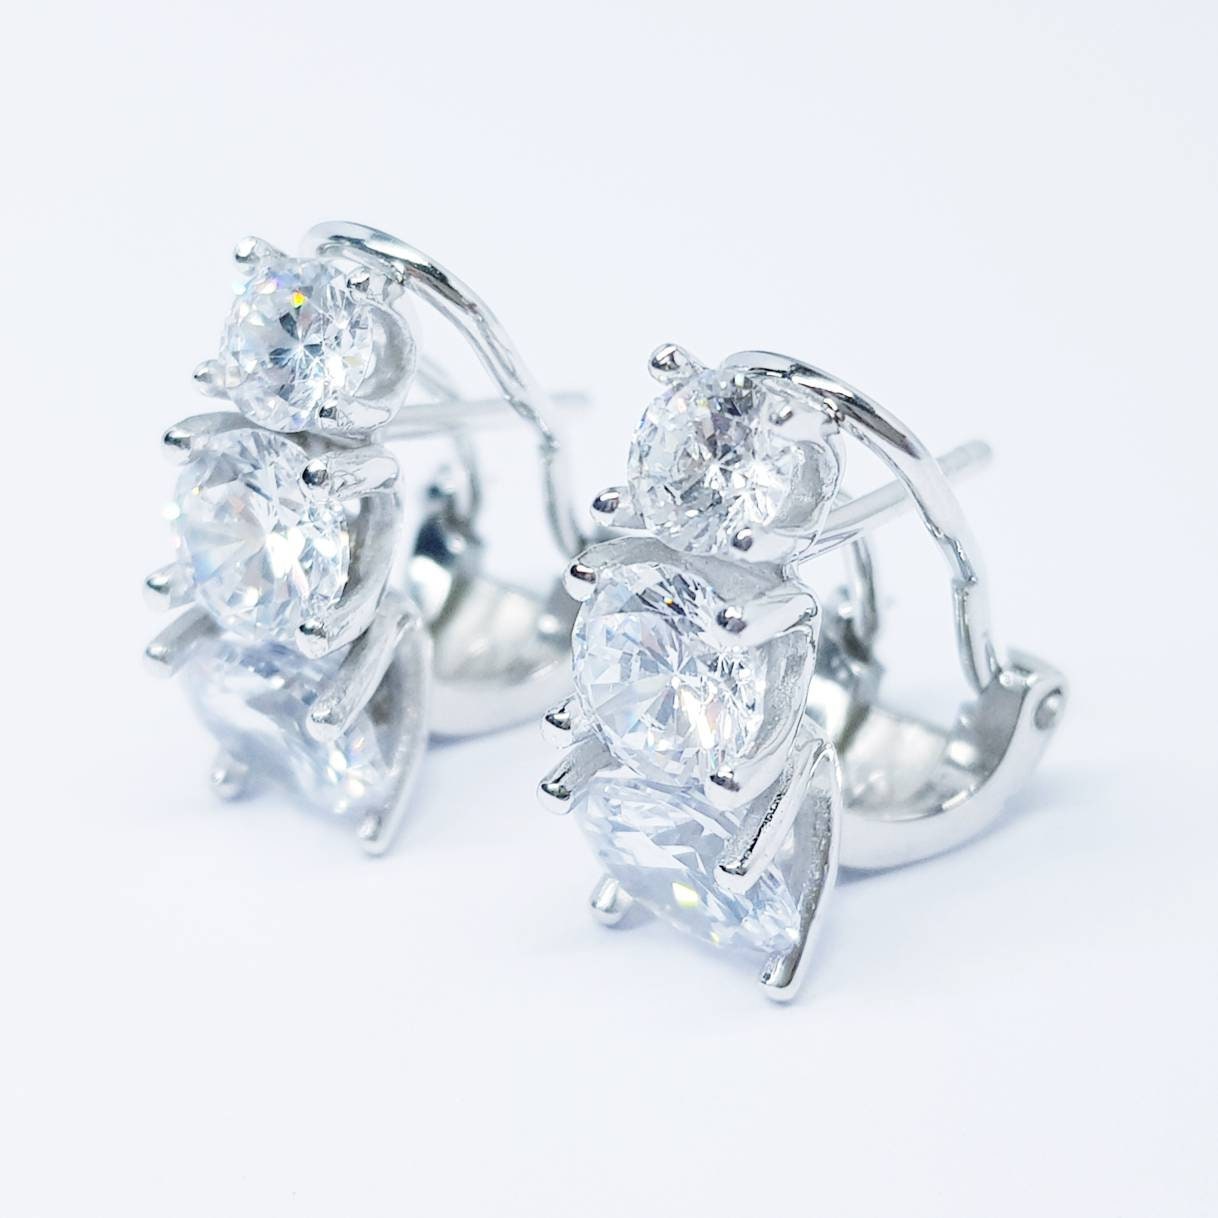 Bridal Earrings, Wedding Earrings, 925 Silver latch back Earrings, Bridal Jewelry, Bridesmaid Earrings